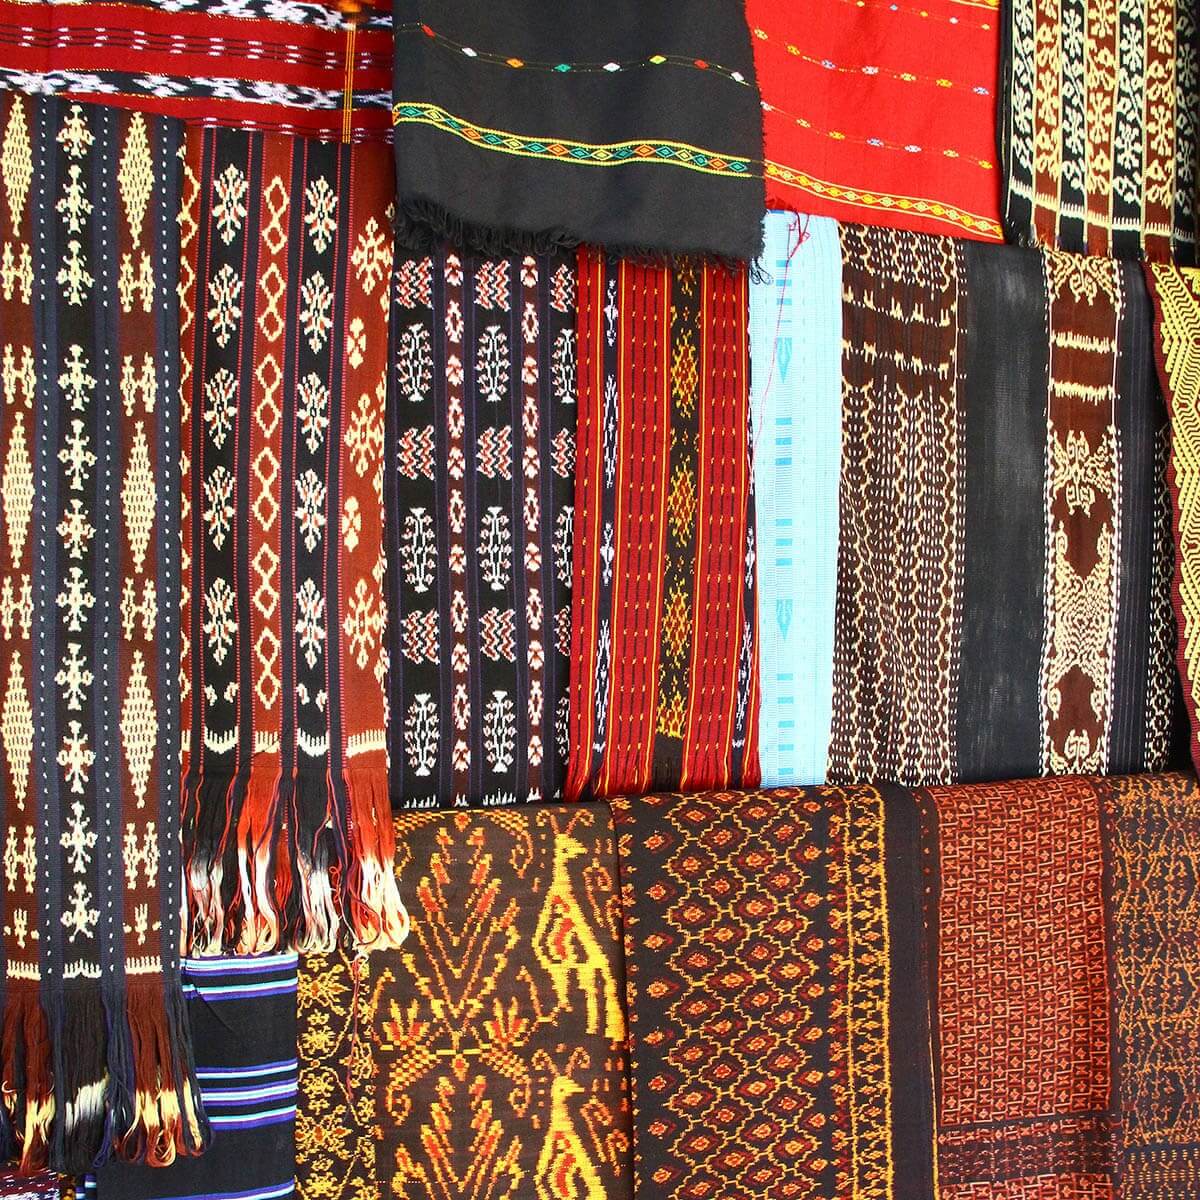 Dalam 1 provinsi di Indonesia bisa ada beberapa motif dan jenis kain tenun yang berbeda-beda